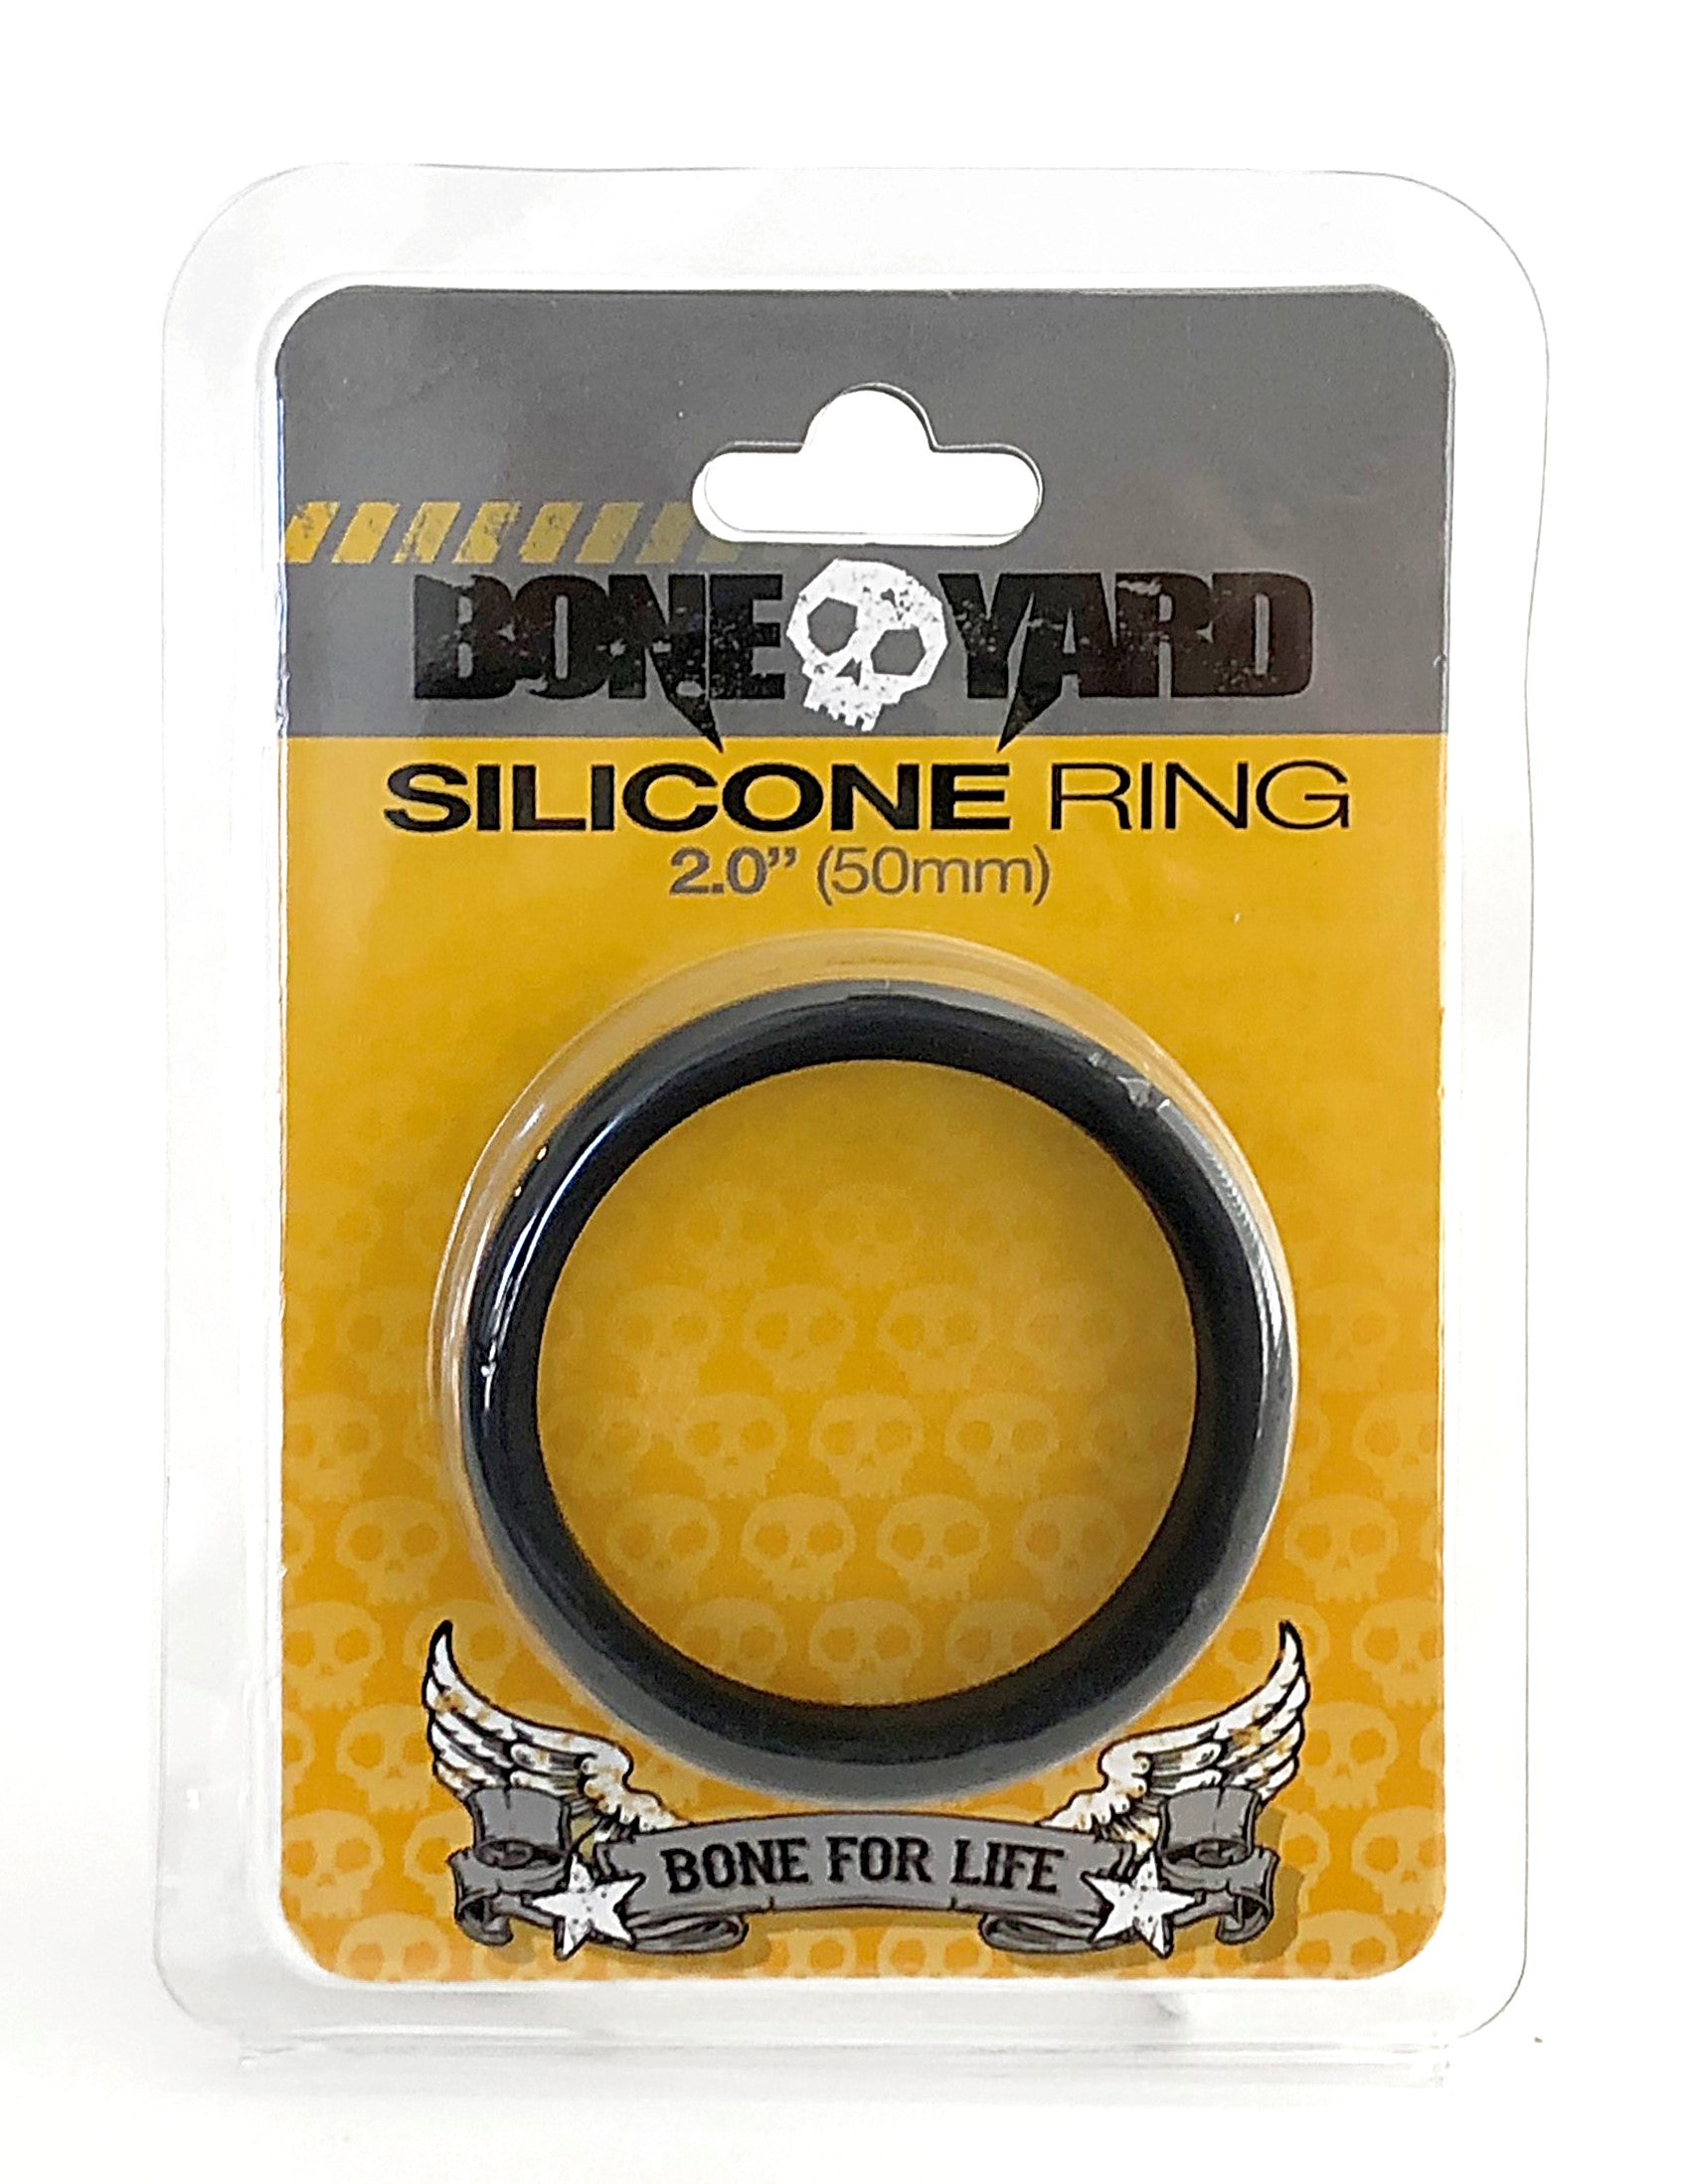 Boneyard Silicone Ring 50mm - Black-2